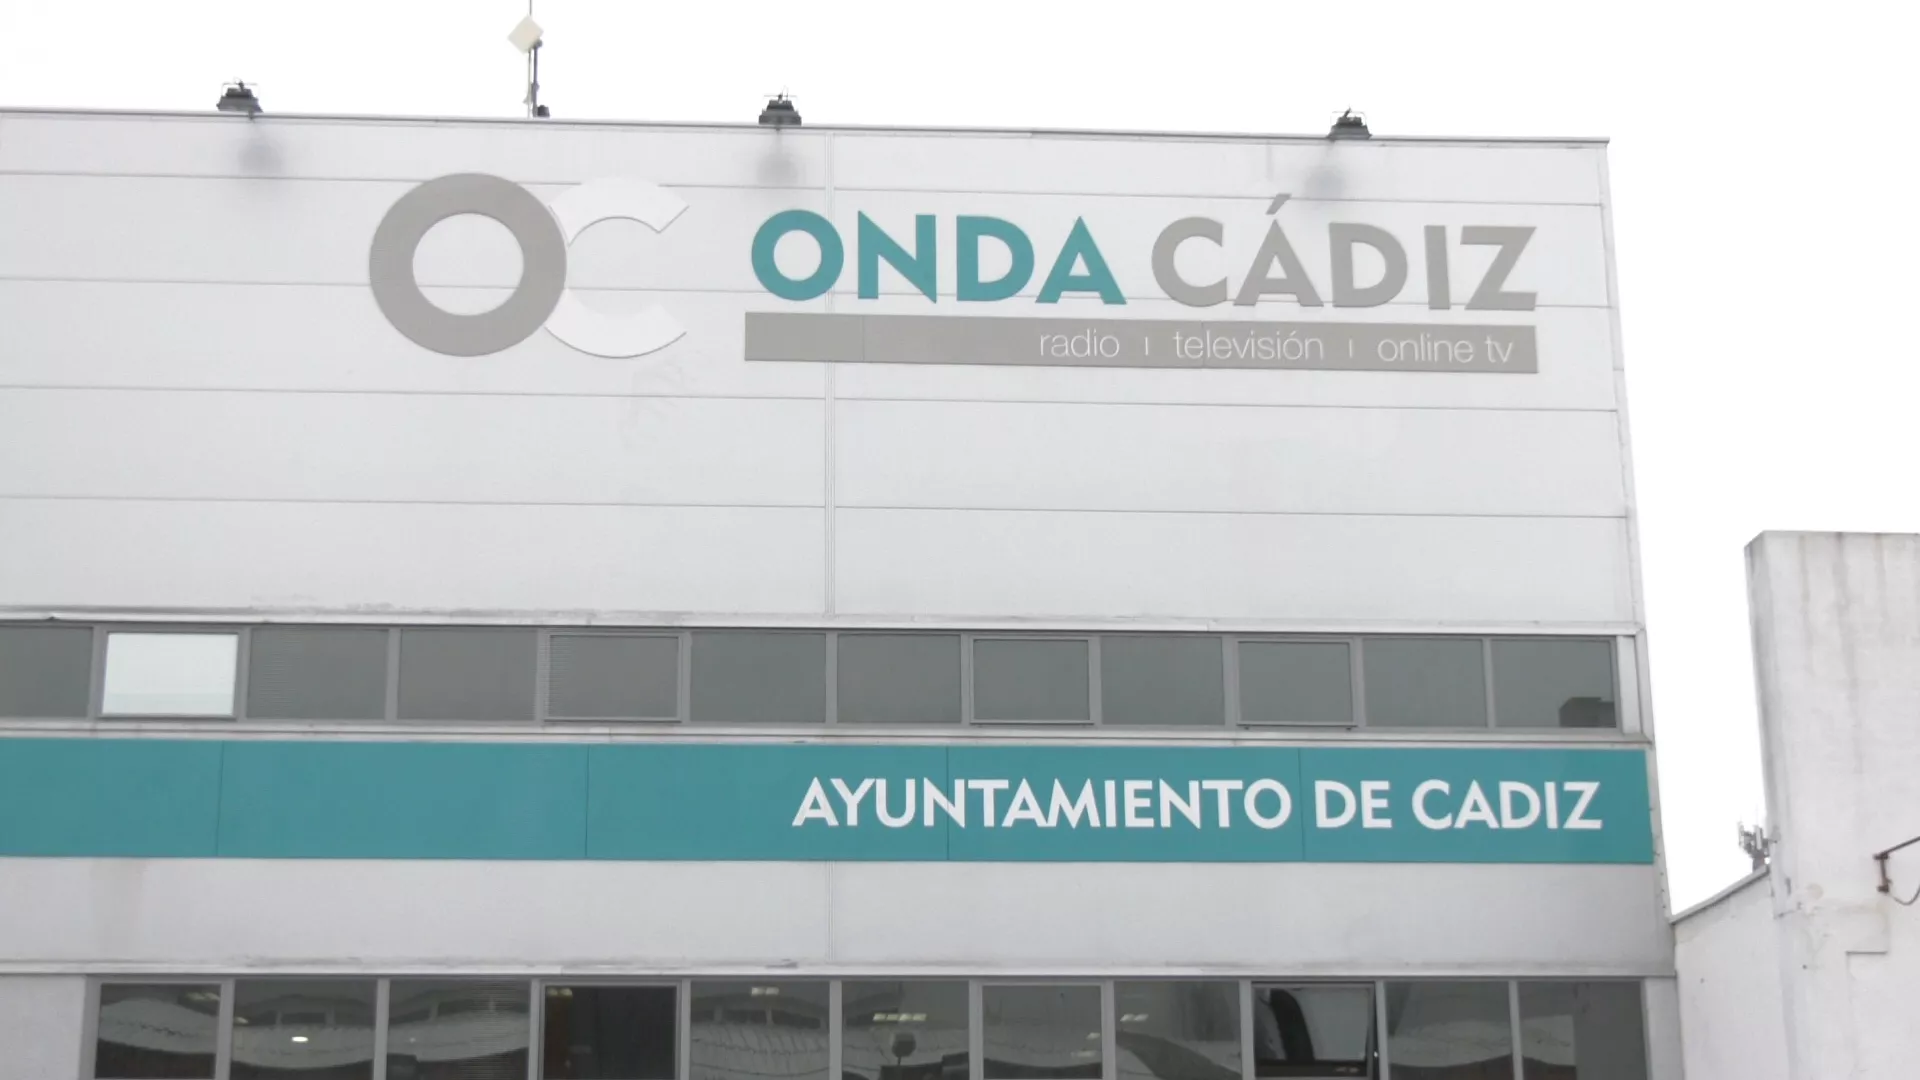 Fachada de Onda Cádiz 